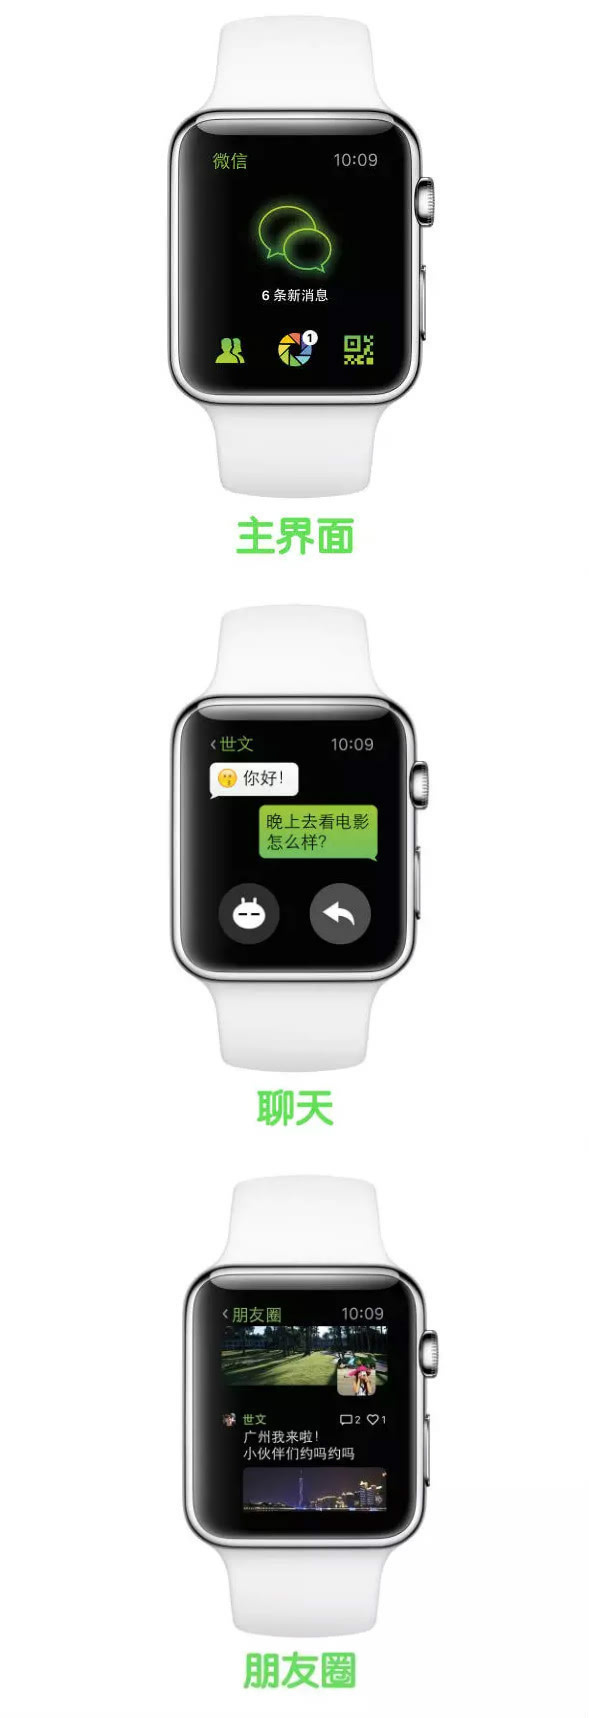 发布Apple Watch和土豪金Macbook-金龙机电(